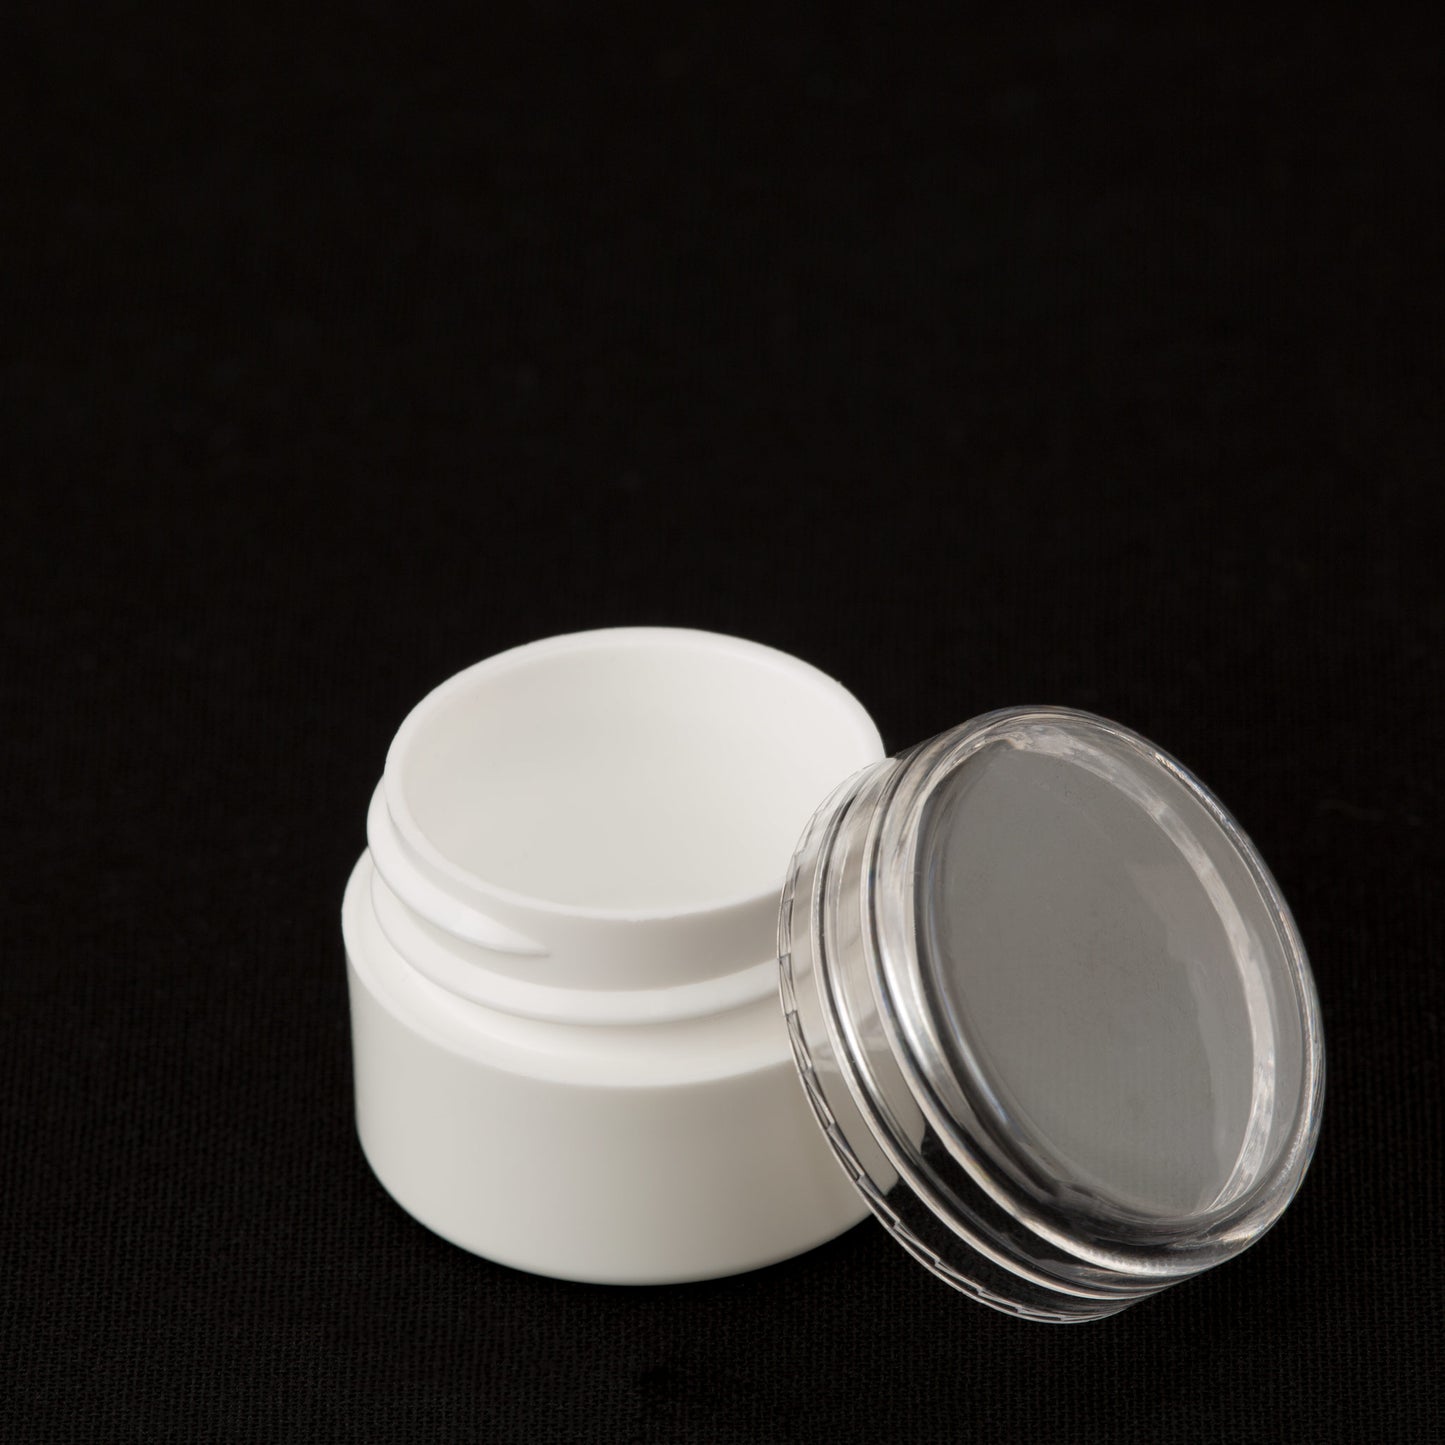 .25 oz / 7.5ml White Lip Balm Jar with Clear Cap